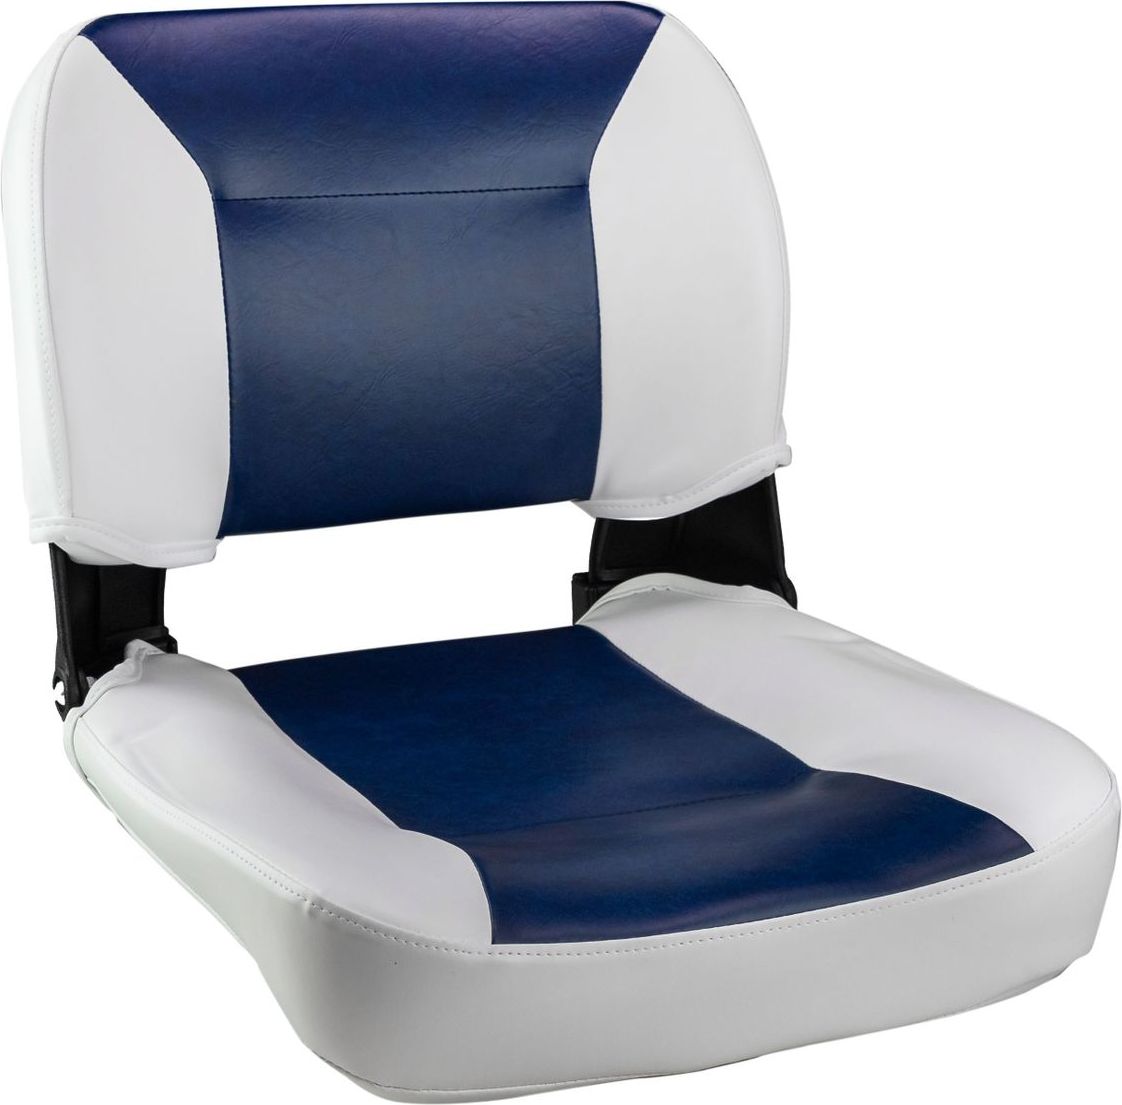 Кресло складное, цвет белый/синий (упаковка из 2 шт.) C12510WL_pkg_2 подставка под кресло вращающаяся с креплением к баночке надувной лодки упаковка из 2 шт c12565 pkg 2